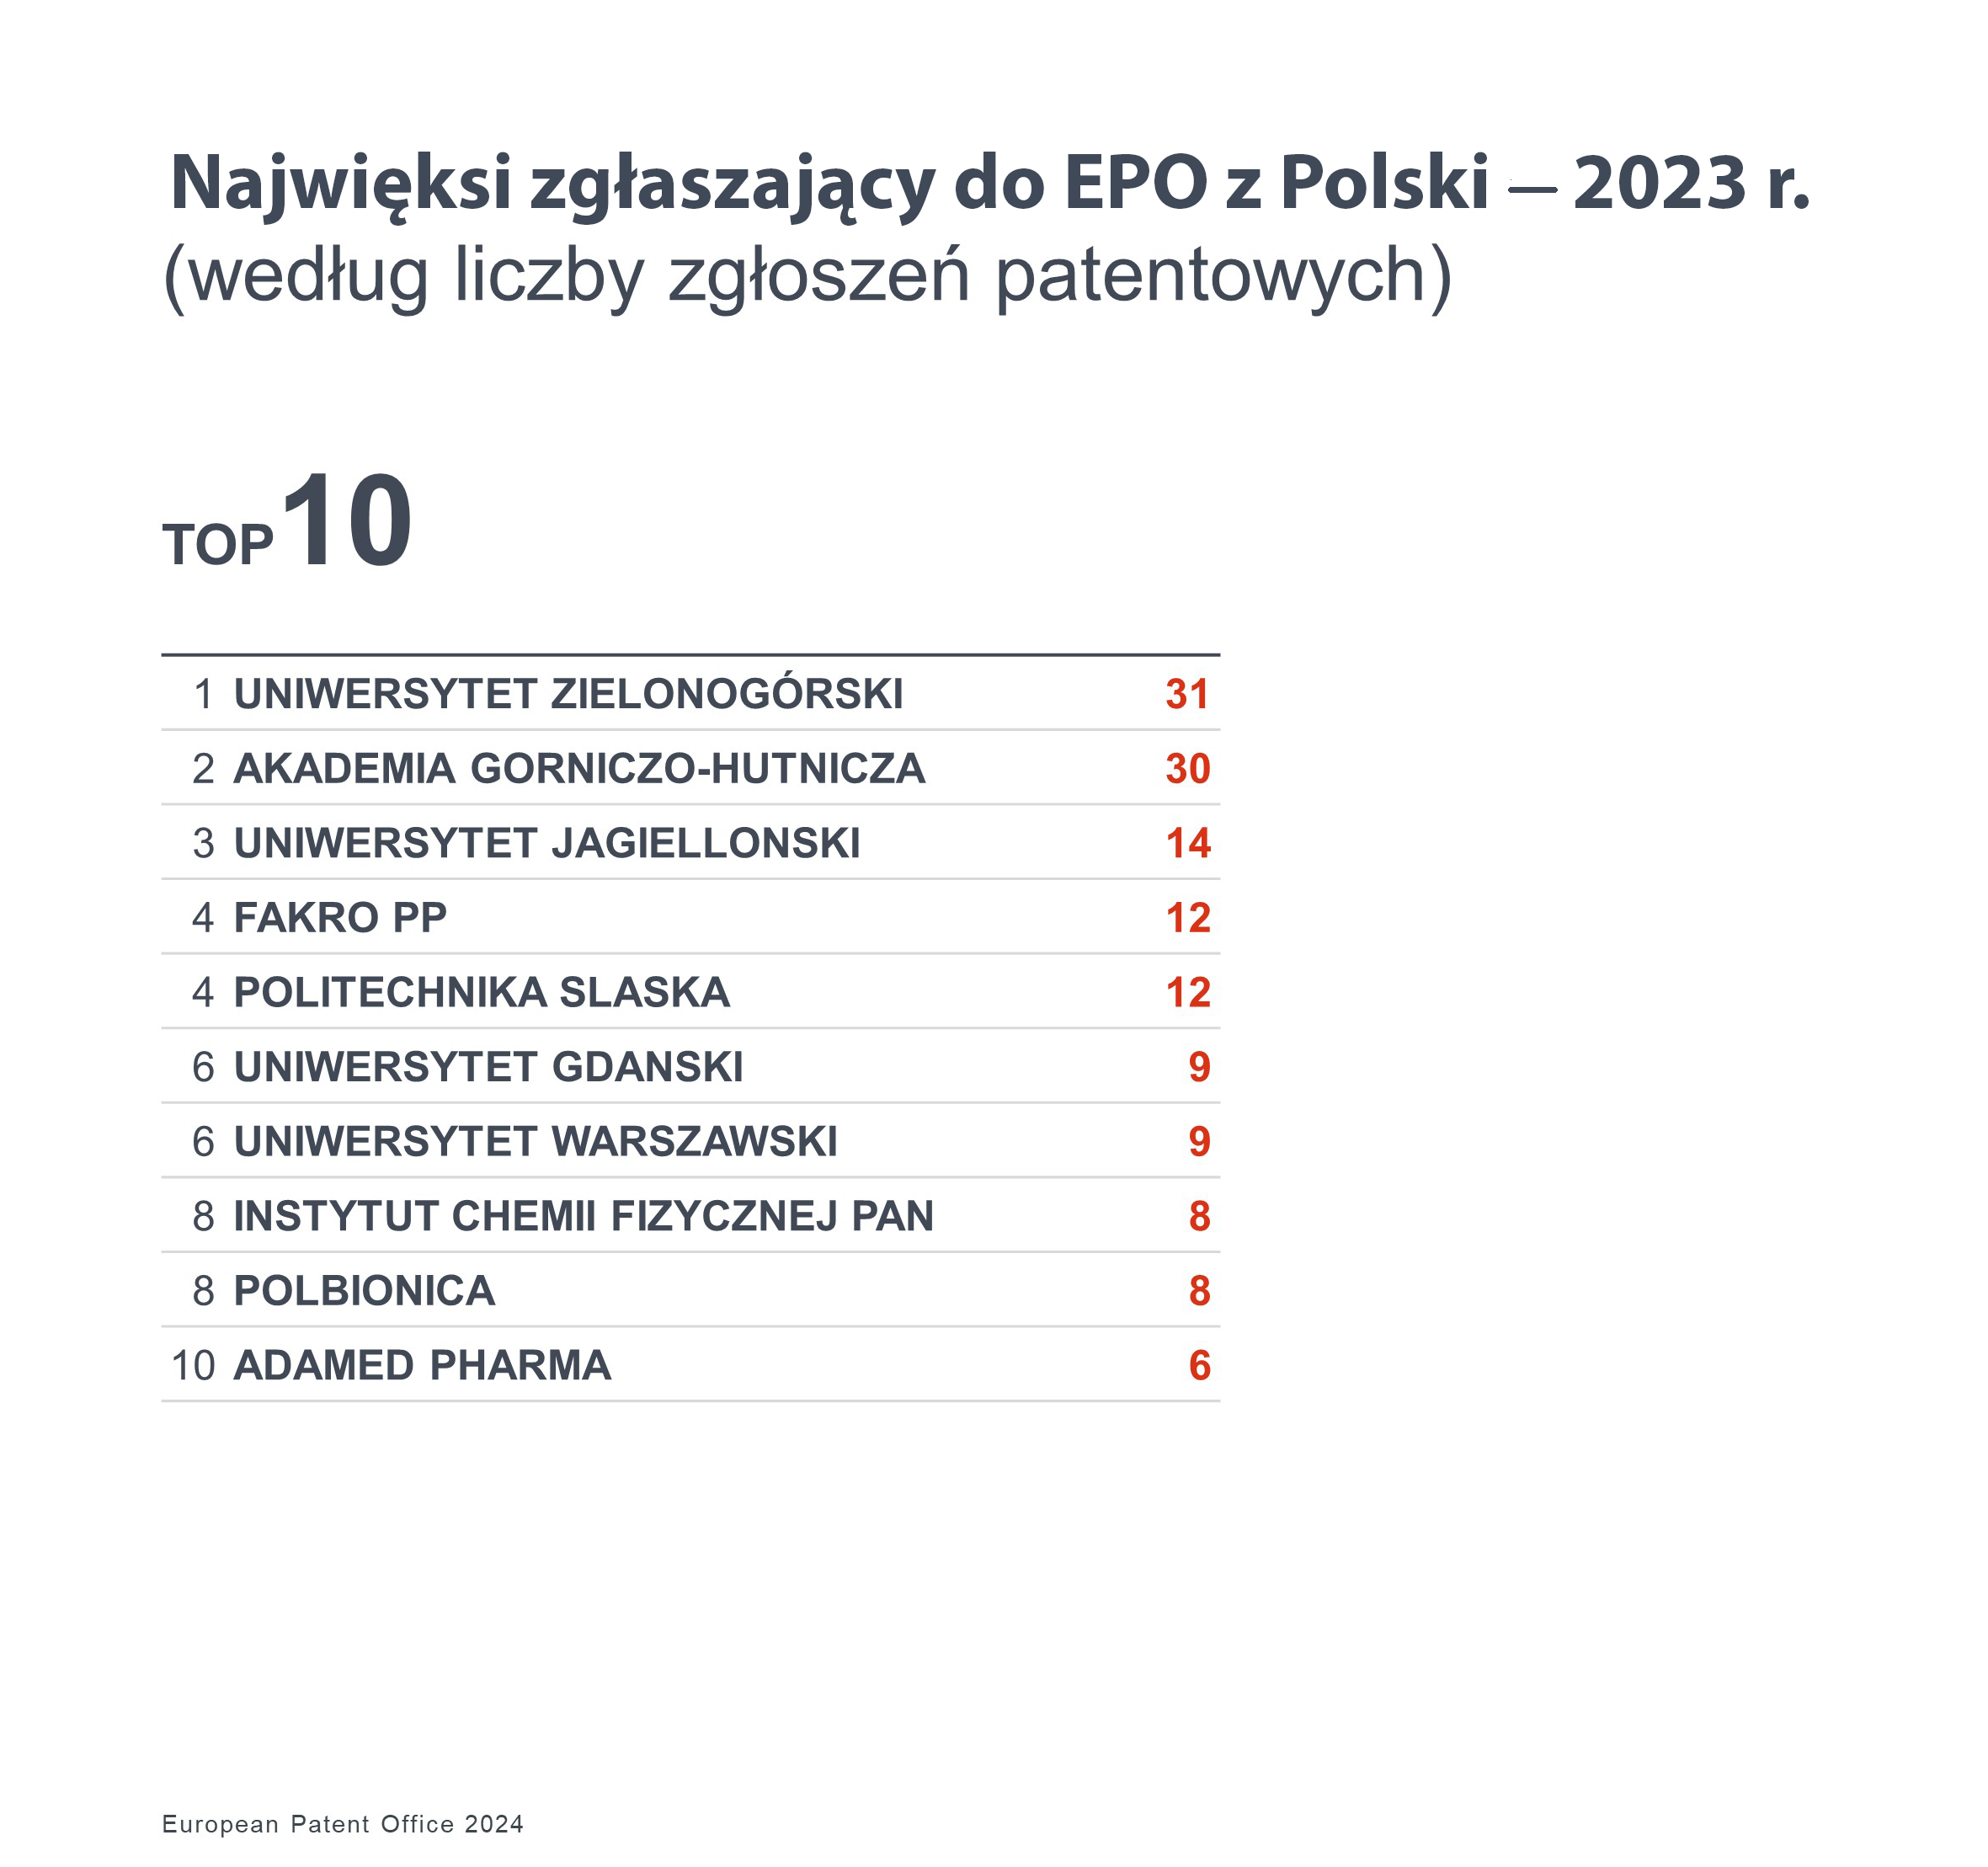 Lista dziesięciu największych zgłaszających podmiotów do Europejskiego Urzędu Patentowego z Polski w 2023 roku według liczby zgłoszeń patentowych